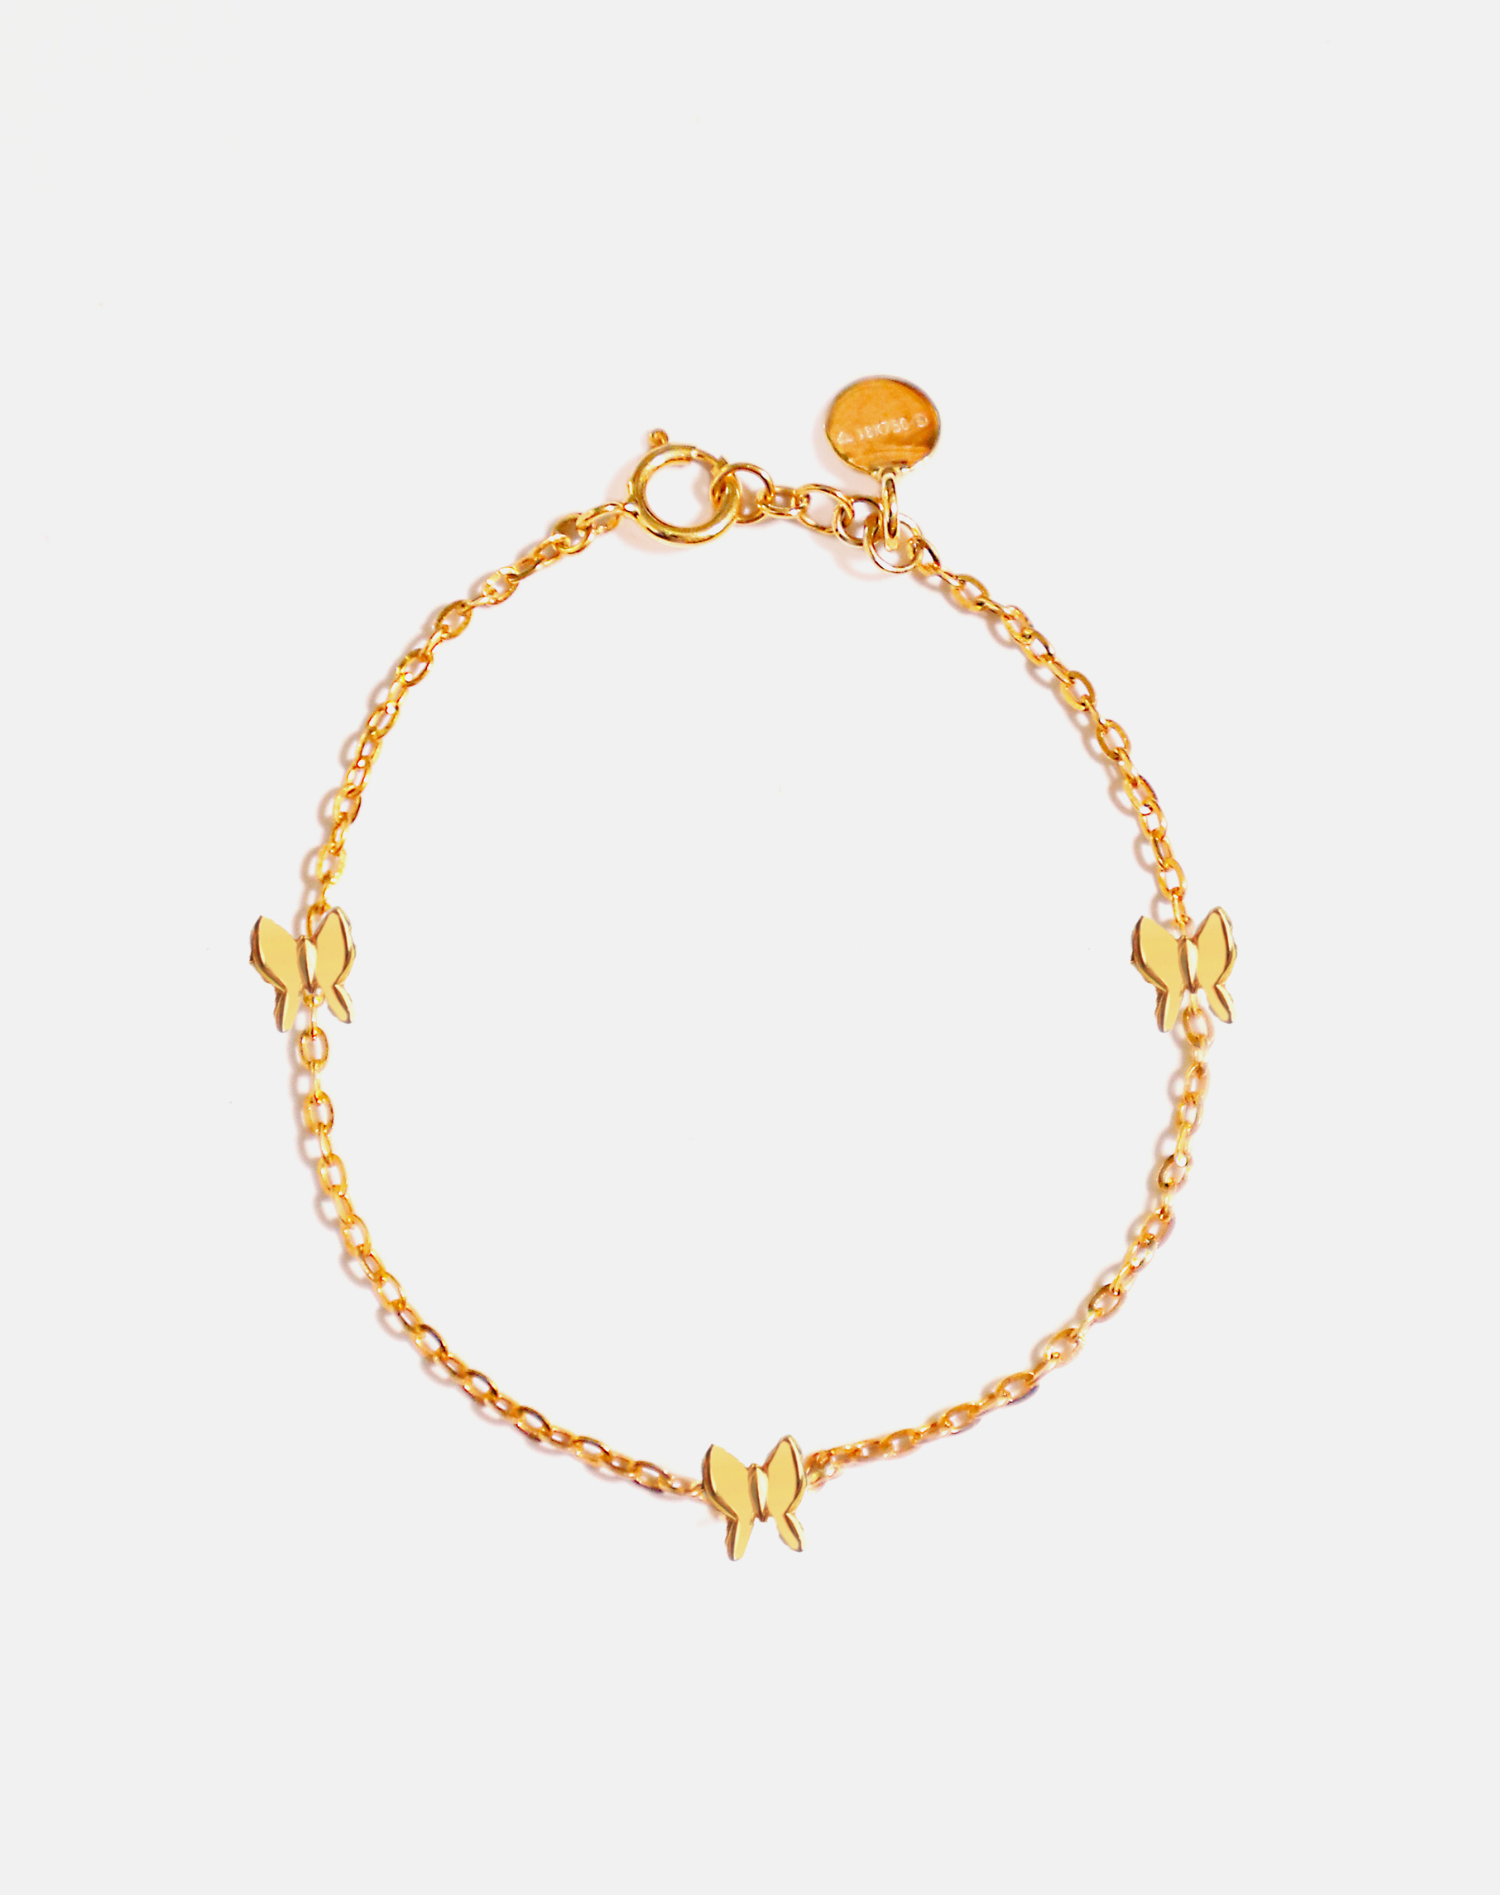 Hallie Diamond Butterfly Bracelet 14K Gold | LeMel – LeMel